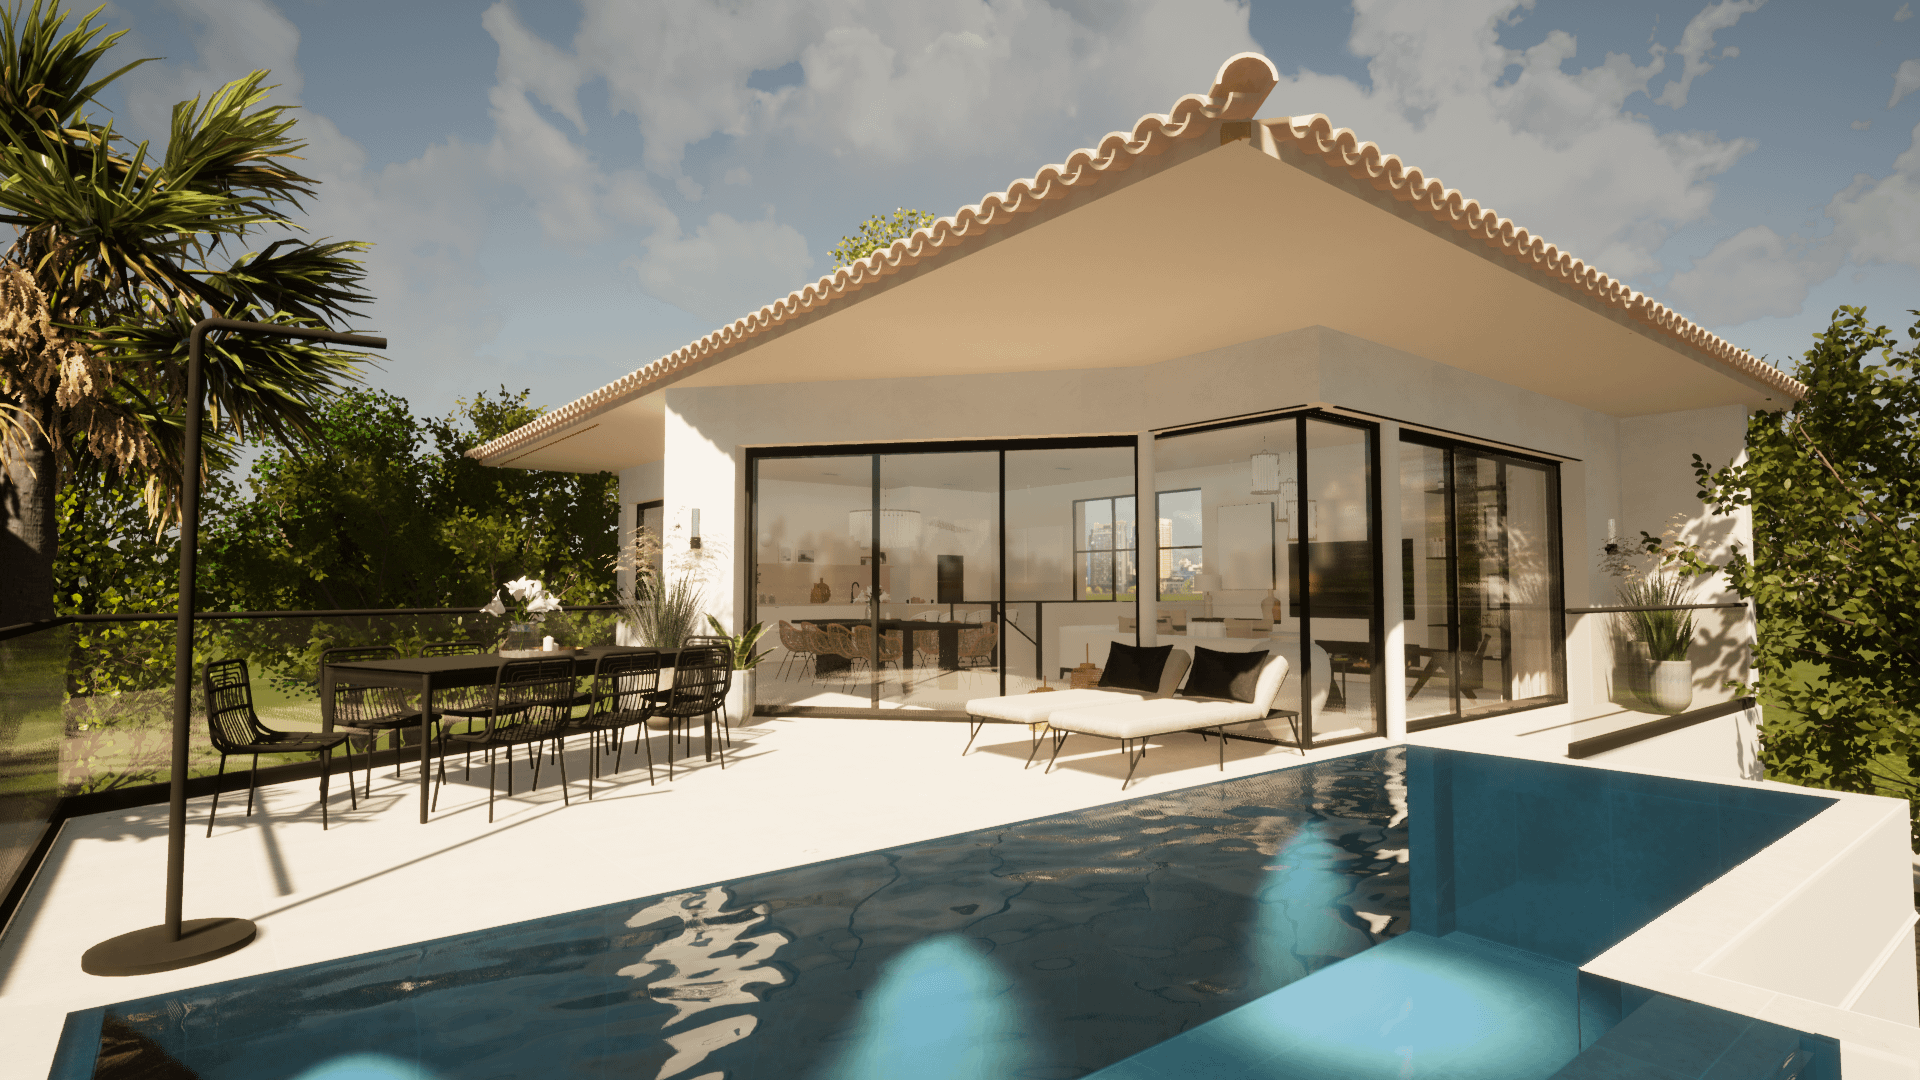 Belle maison d'architecte avec sa terrasse aménagée donnant sur une grande piscine à débordement.